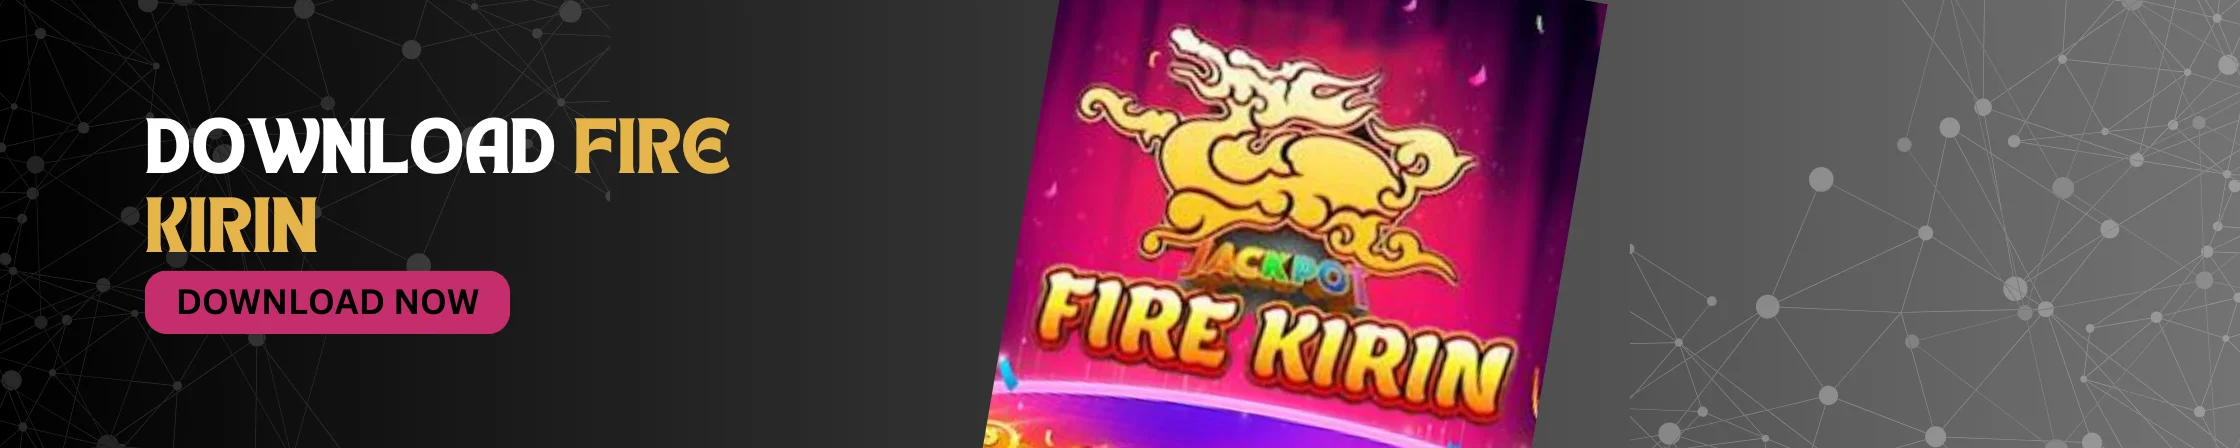 Fire-Kirin-Download